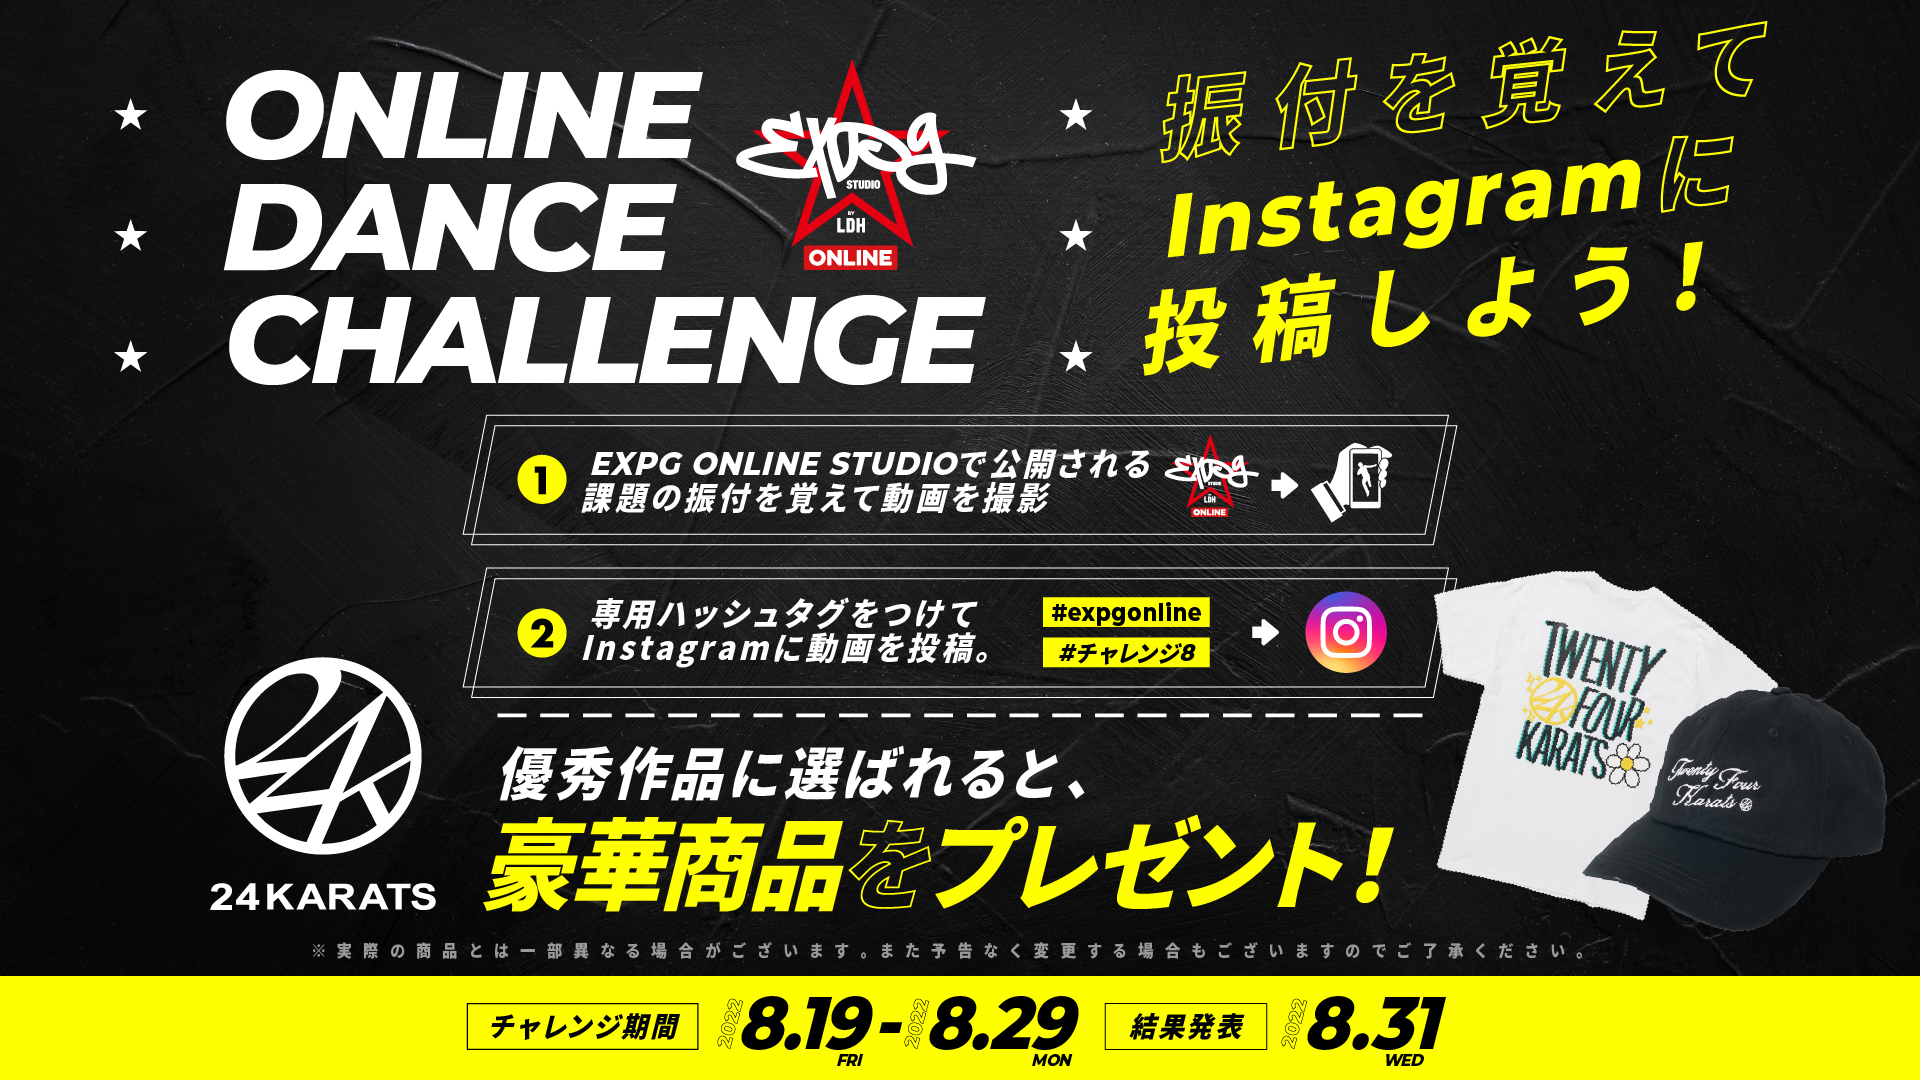 ☆EXPG ONLINE STUDIO ダンスチャレンジ開催☆